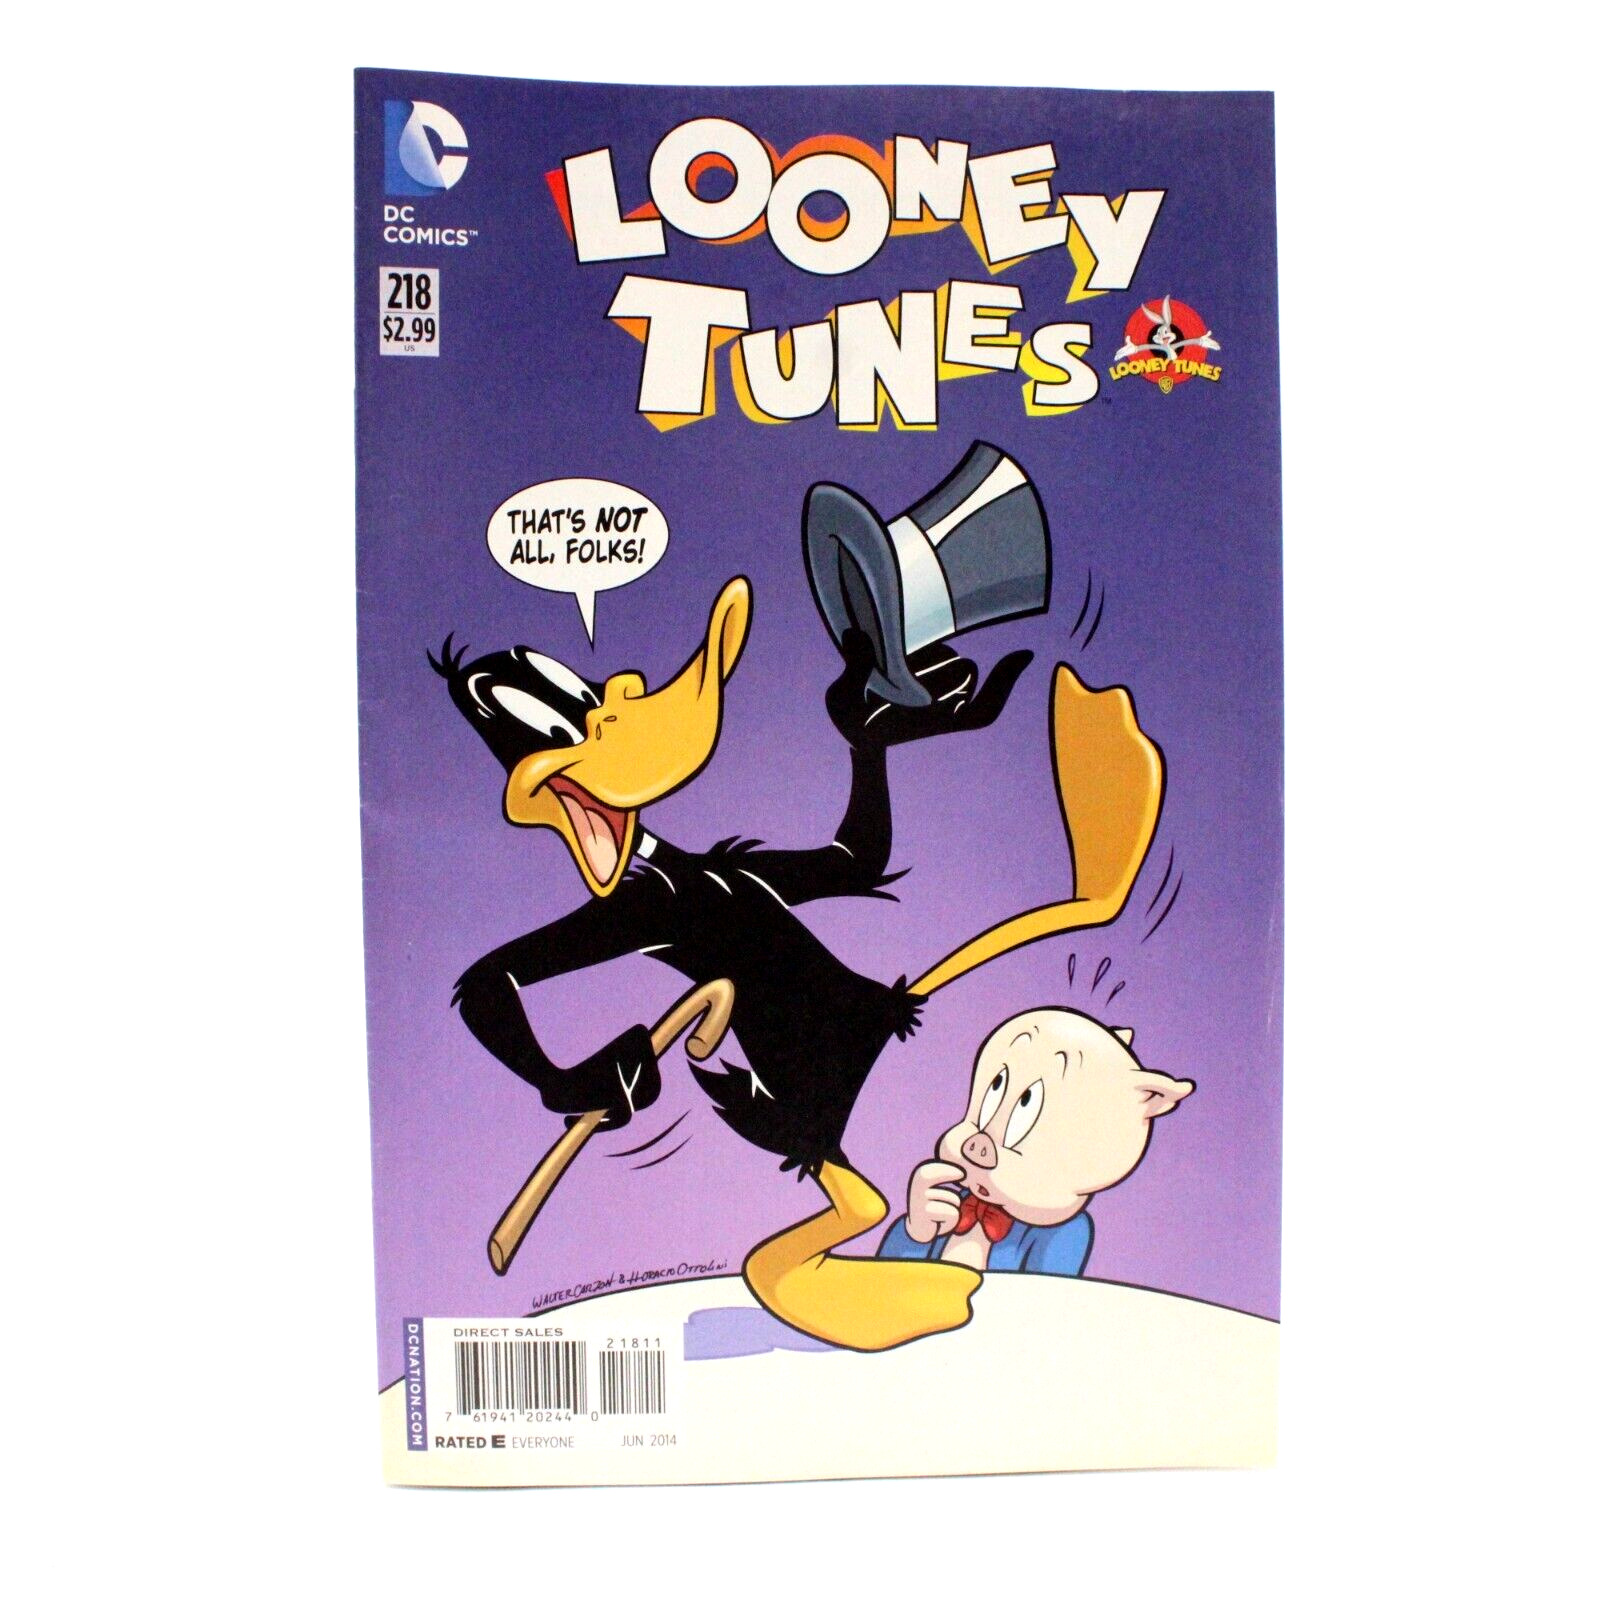 Looney Toons No 218 June 2014 DC Comics Newsstand Variant Cartoons D5b95 Rare